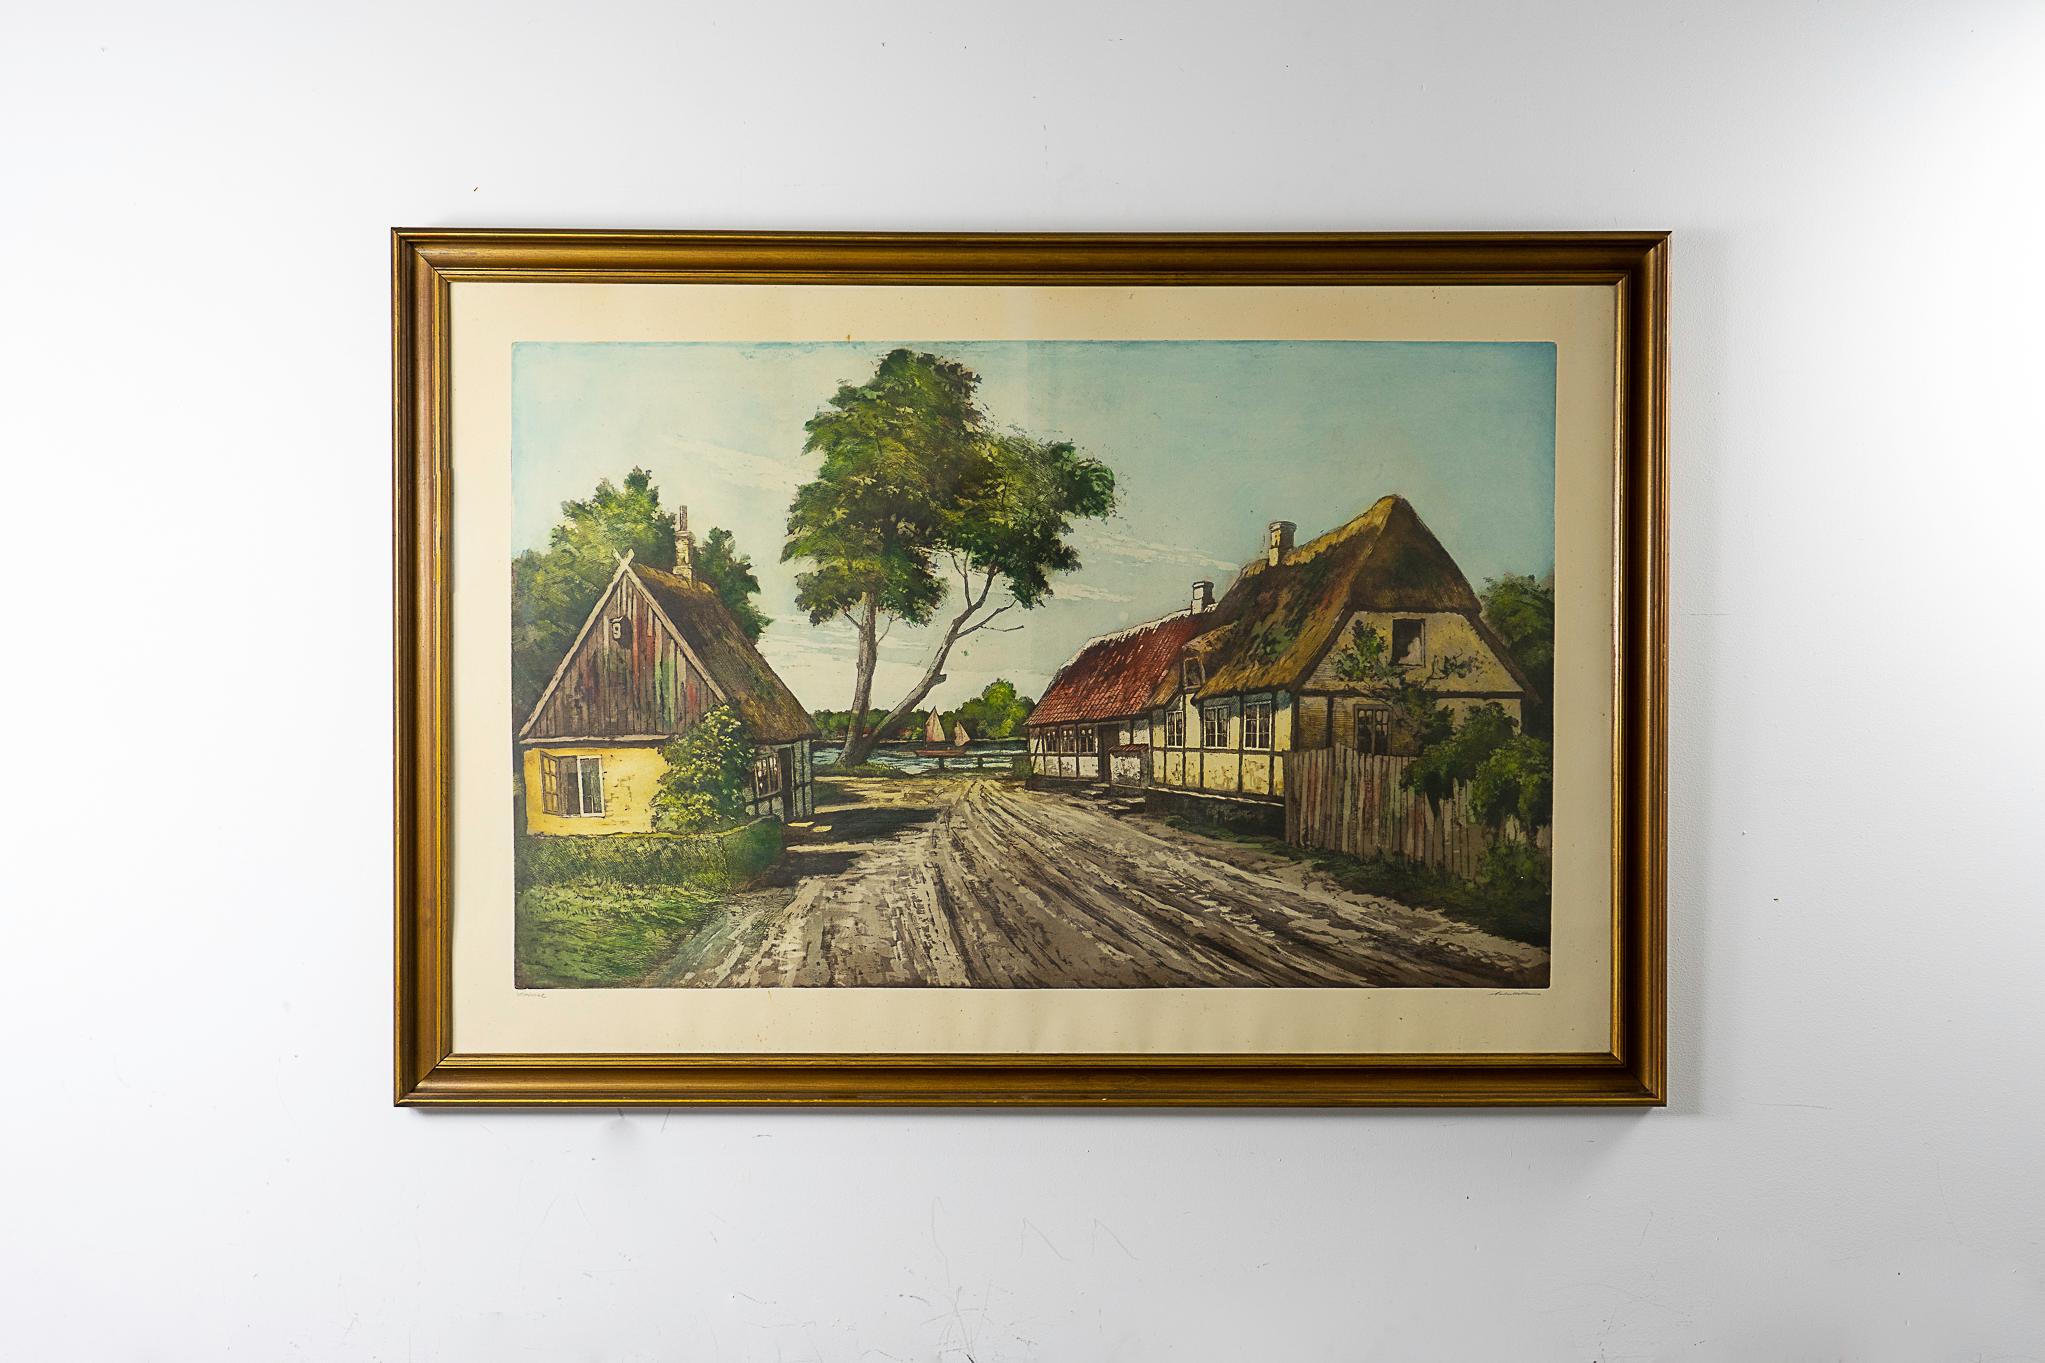 Dänische Lithographie in vergoldetem Rahmen, ca. 1950er Jahre. Eine schöne malerische Dorf-Fluss-Szene in GROSSEM Maßstab, vom Künstler signiert. Eine atemberaubende skandinavische Vignette!

Bitte erkundigen Sie sich nach den Tarifen für Fern- und